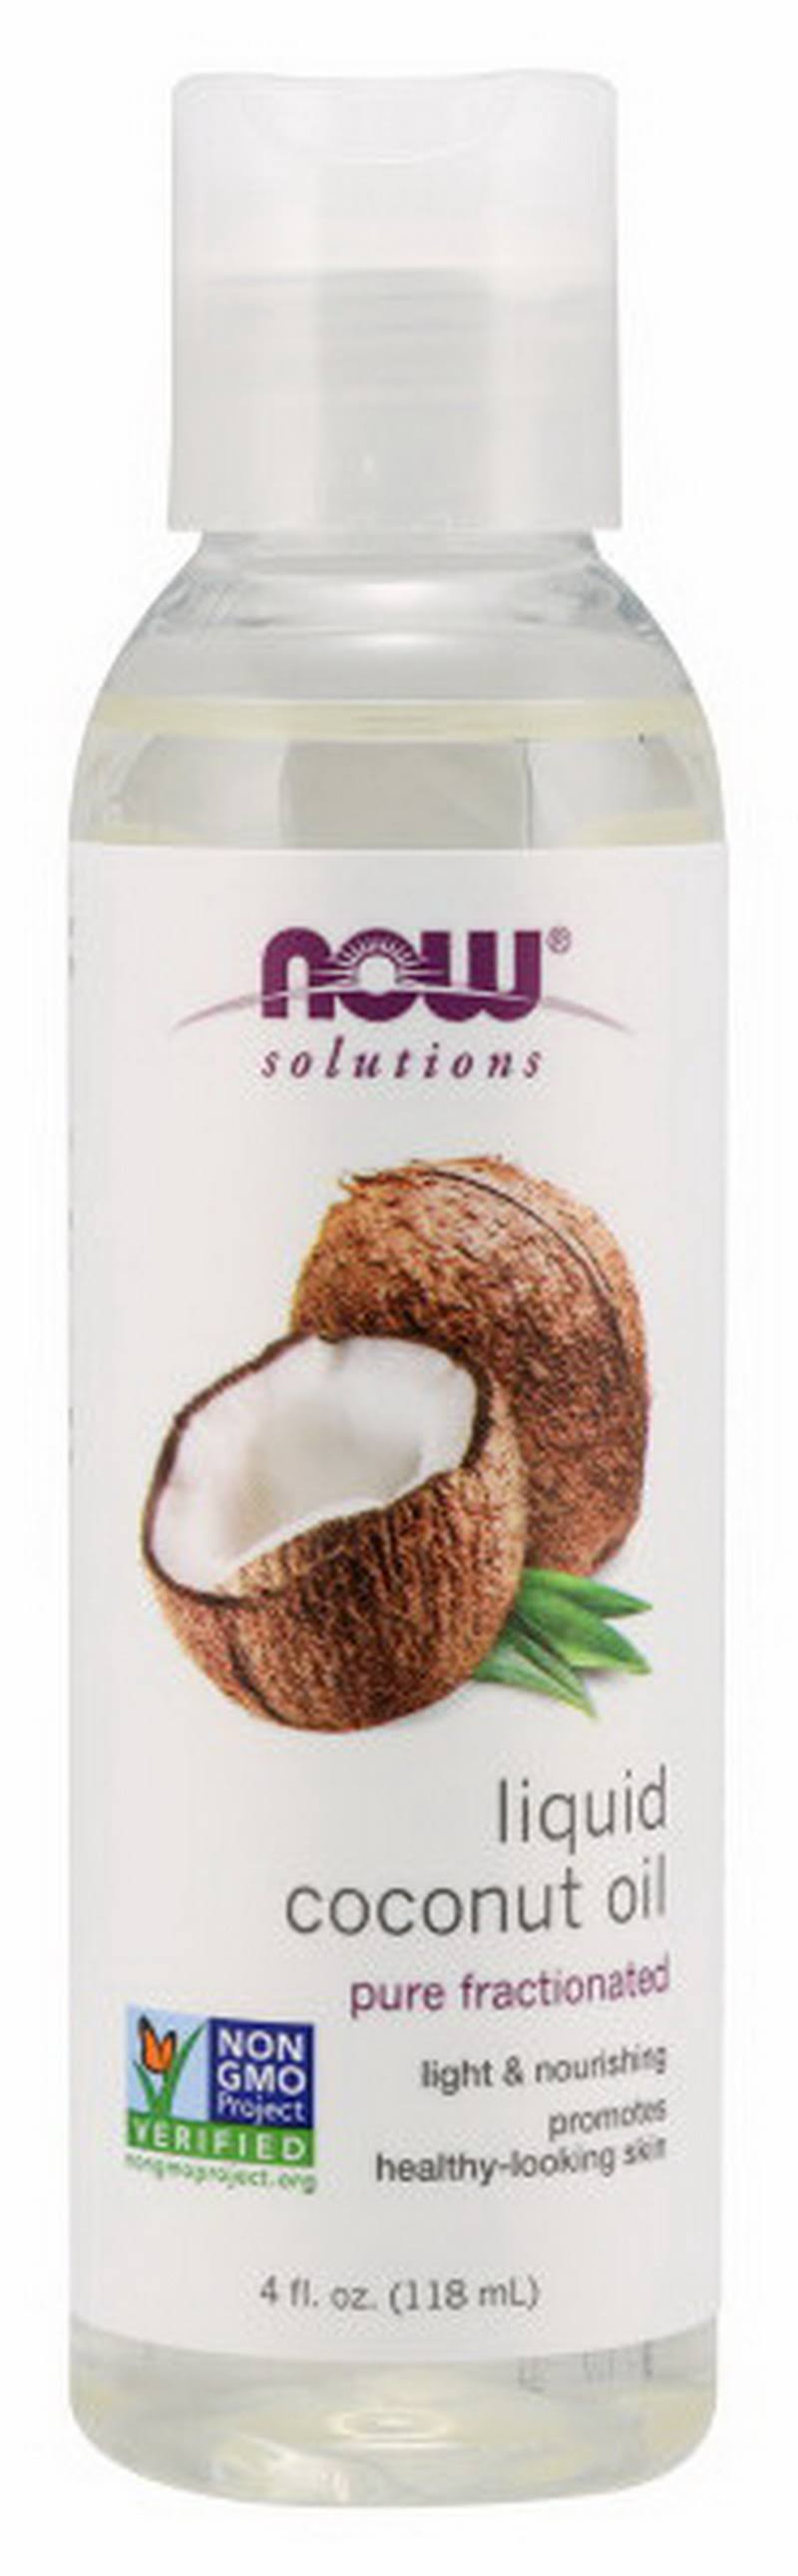 Now Foods Liquid Coconut Oil - 4 fl oz (118 ml)